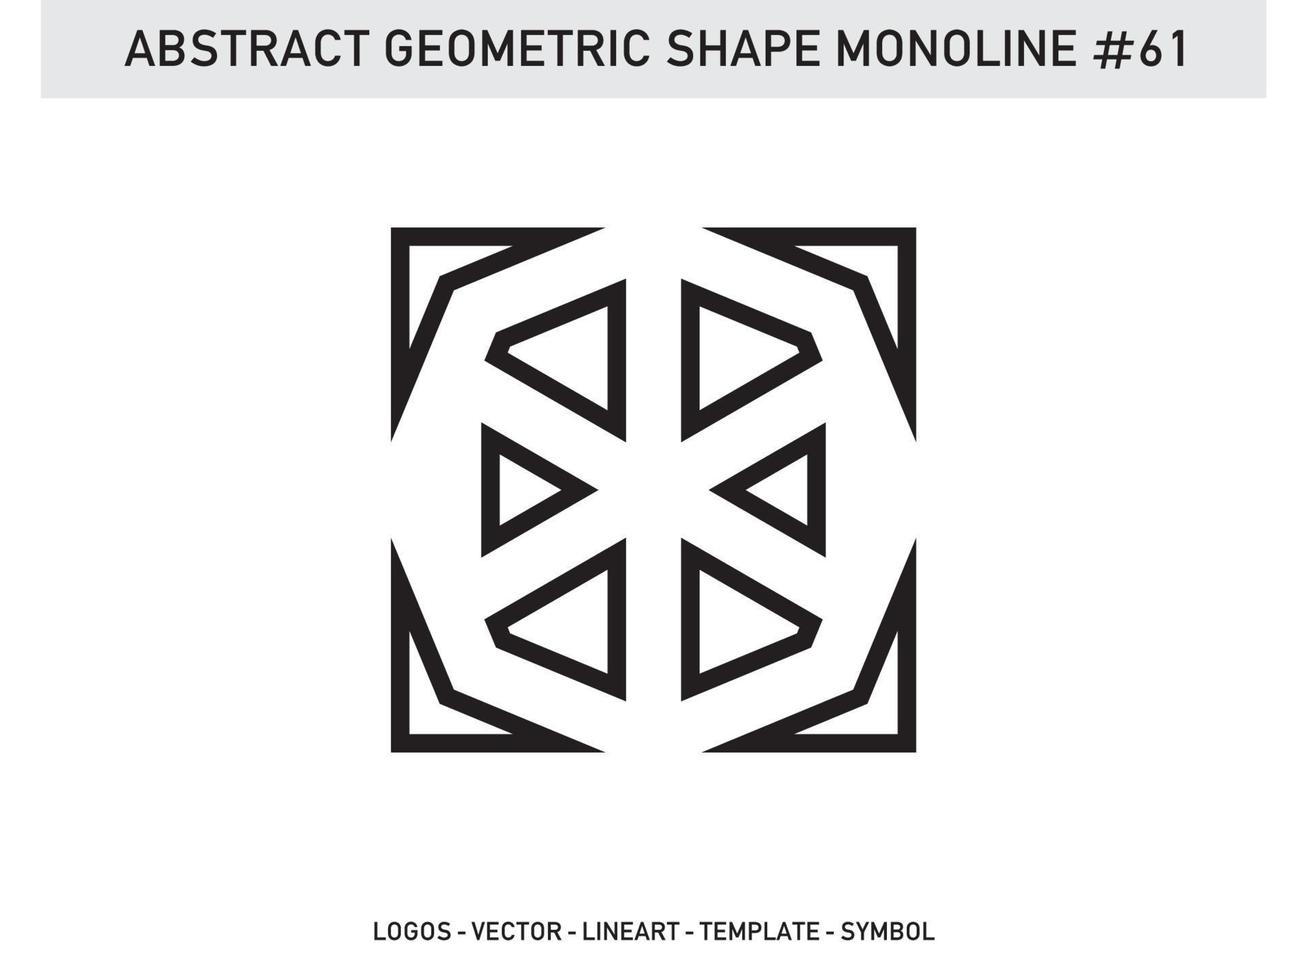 vecteur gratuit abstrait de forme de ligne lineart géométrique monoline